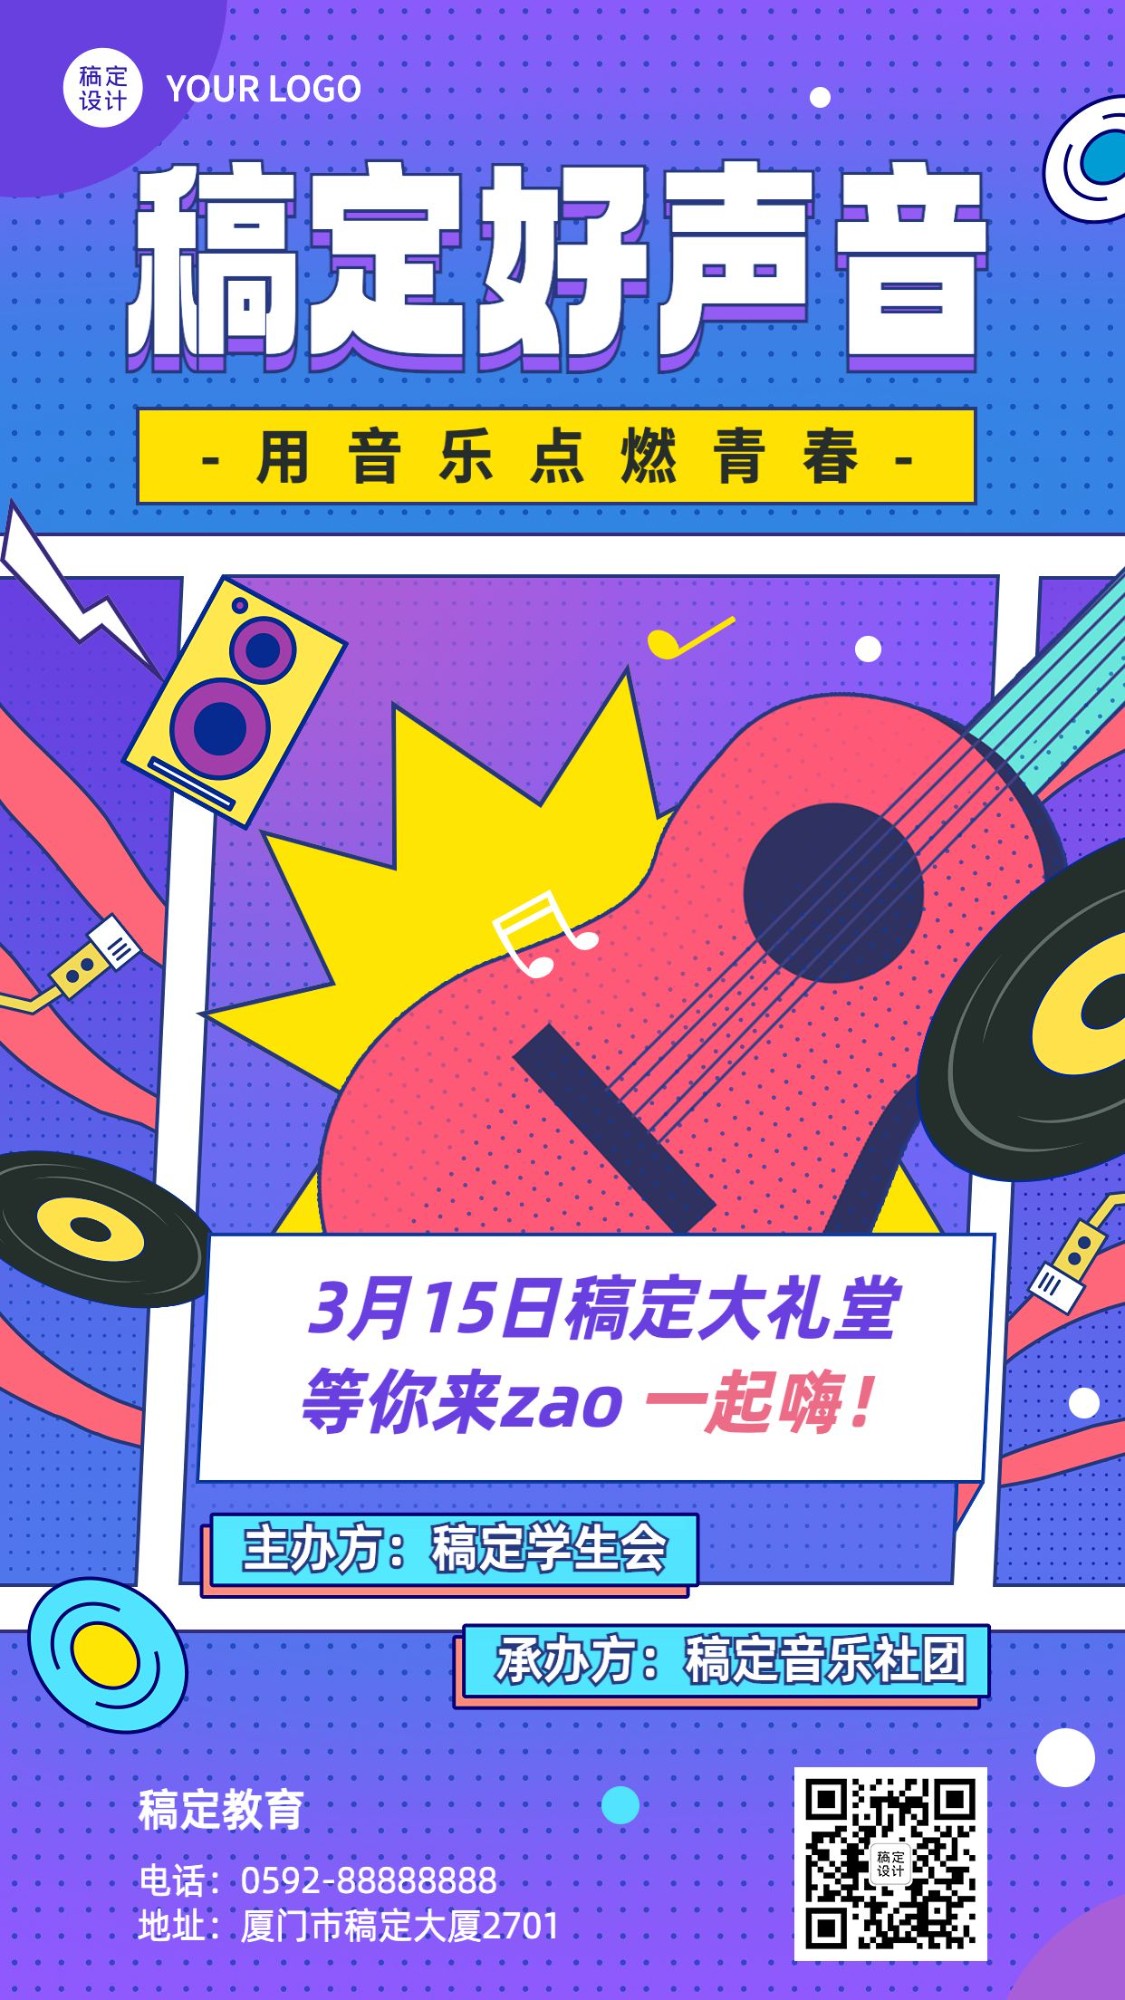 高校学生活动高校音乐节宣传海报手机海报